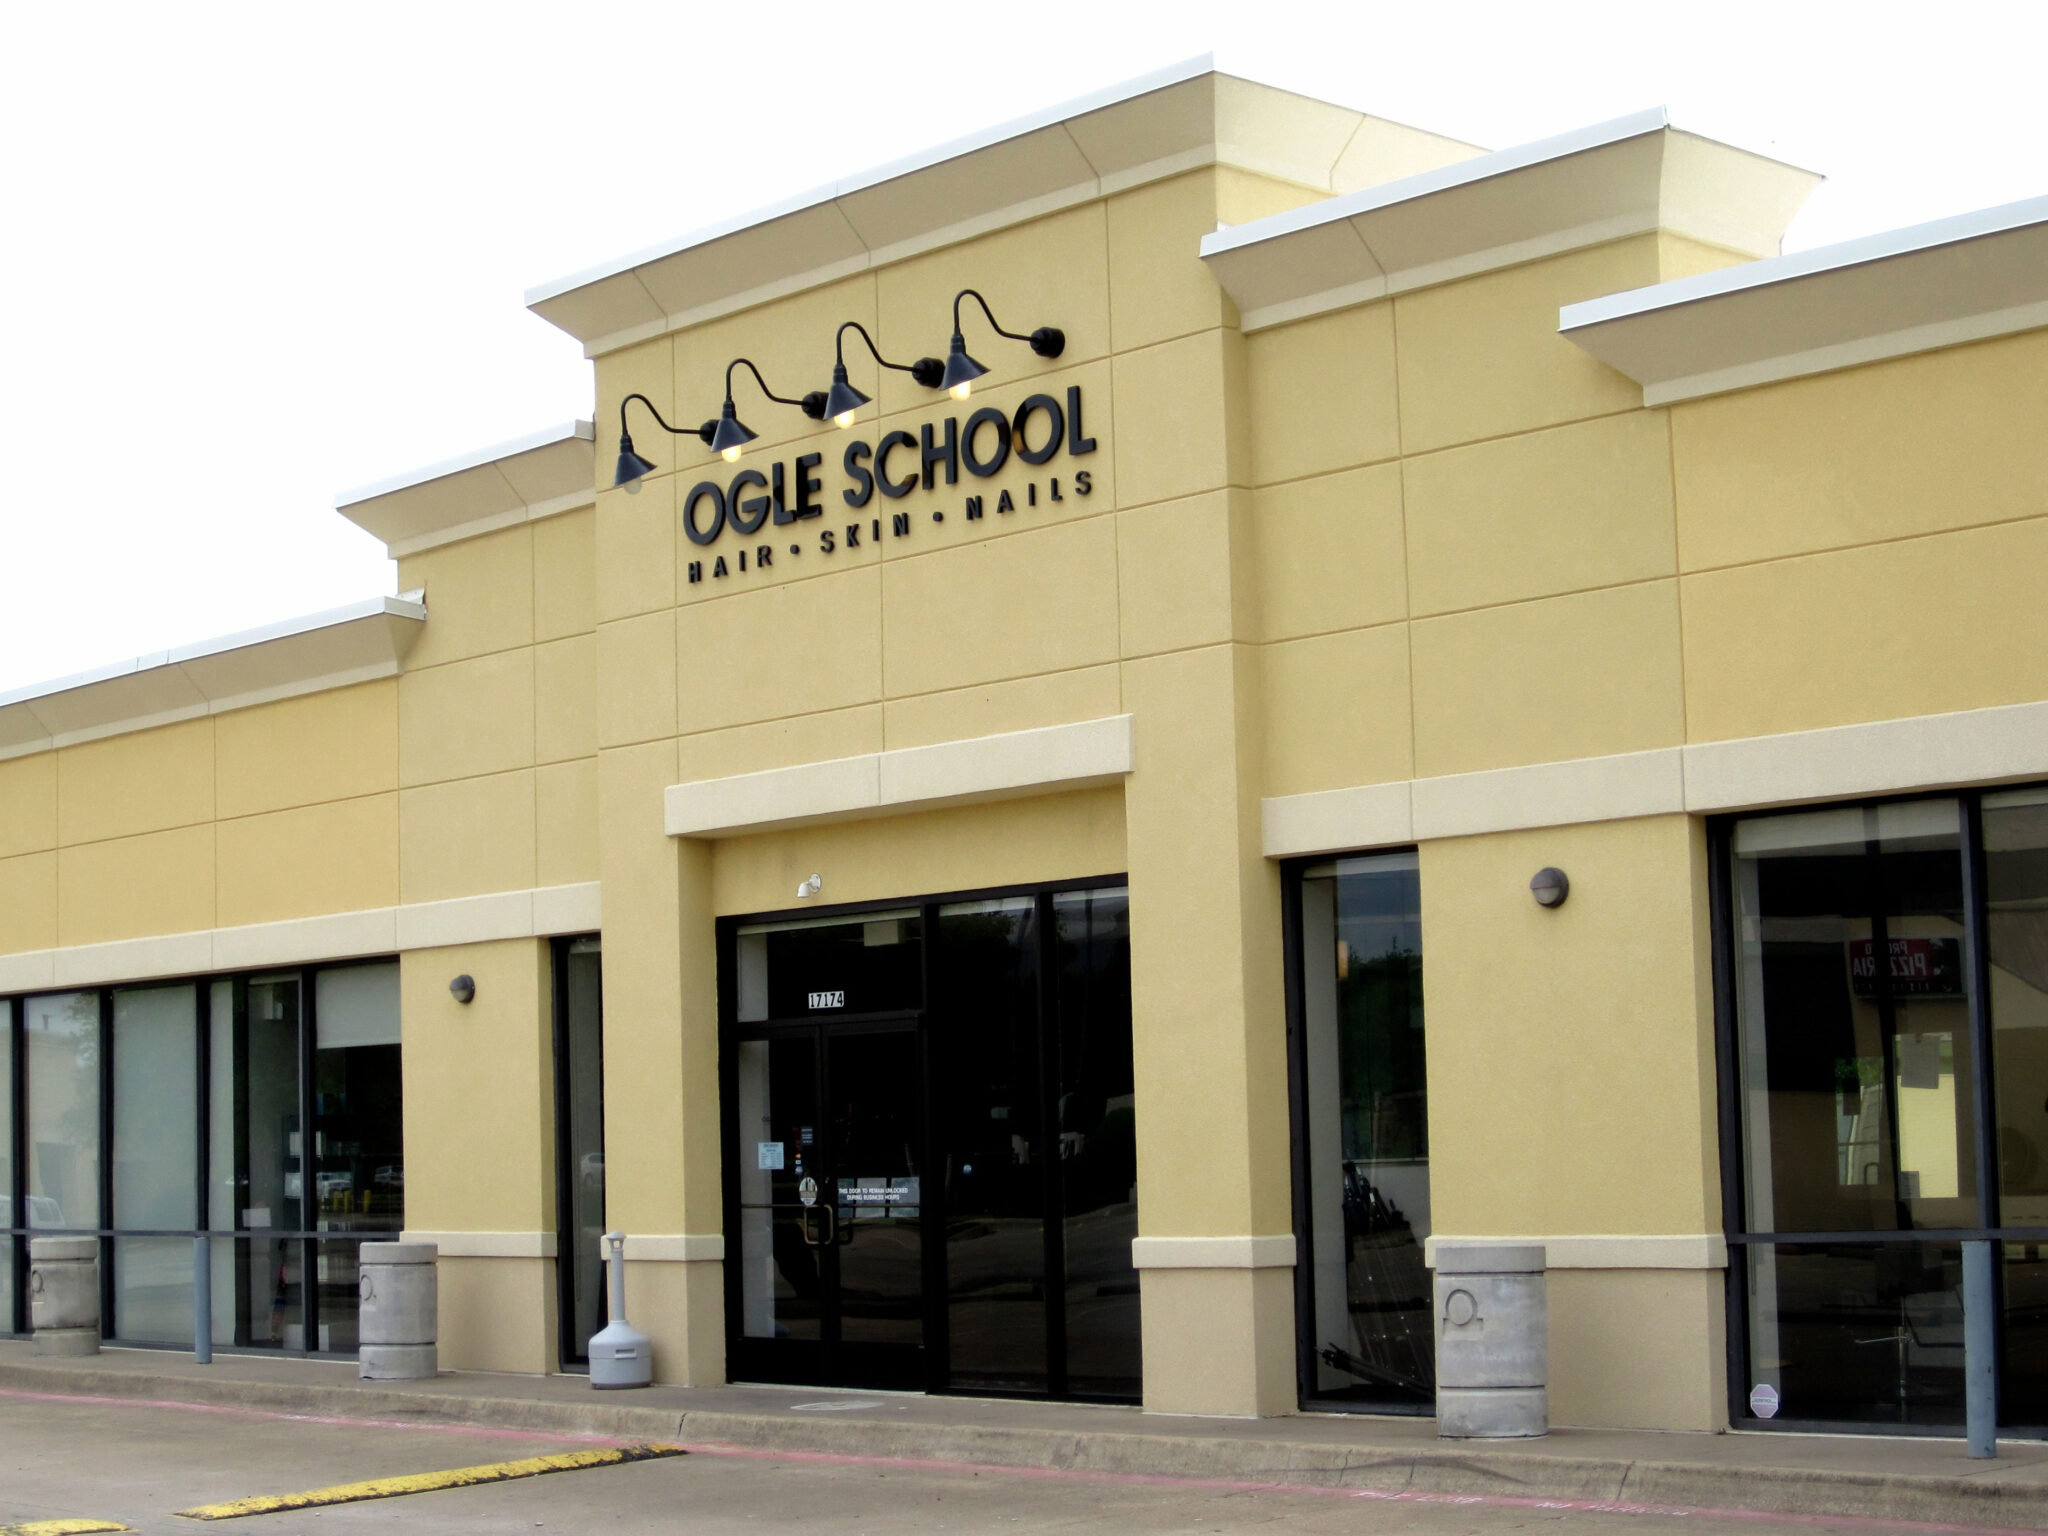 Cosmetology Schools & Beauty Schools in North Dallas Texas - Ogle School